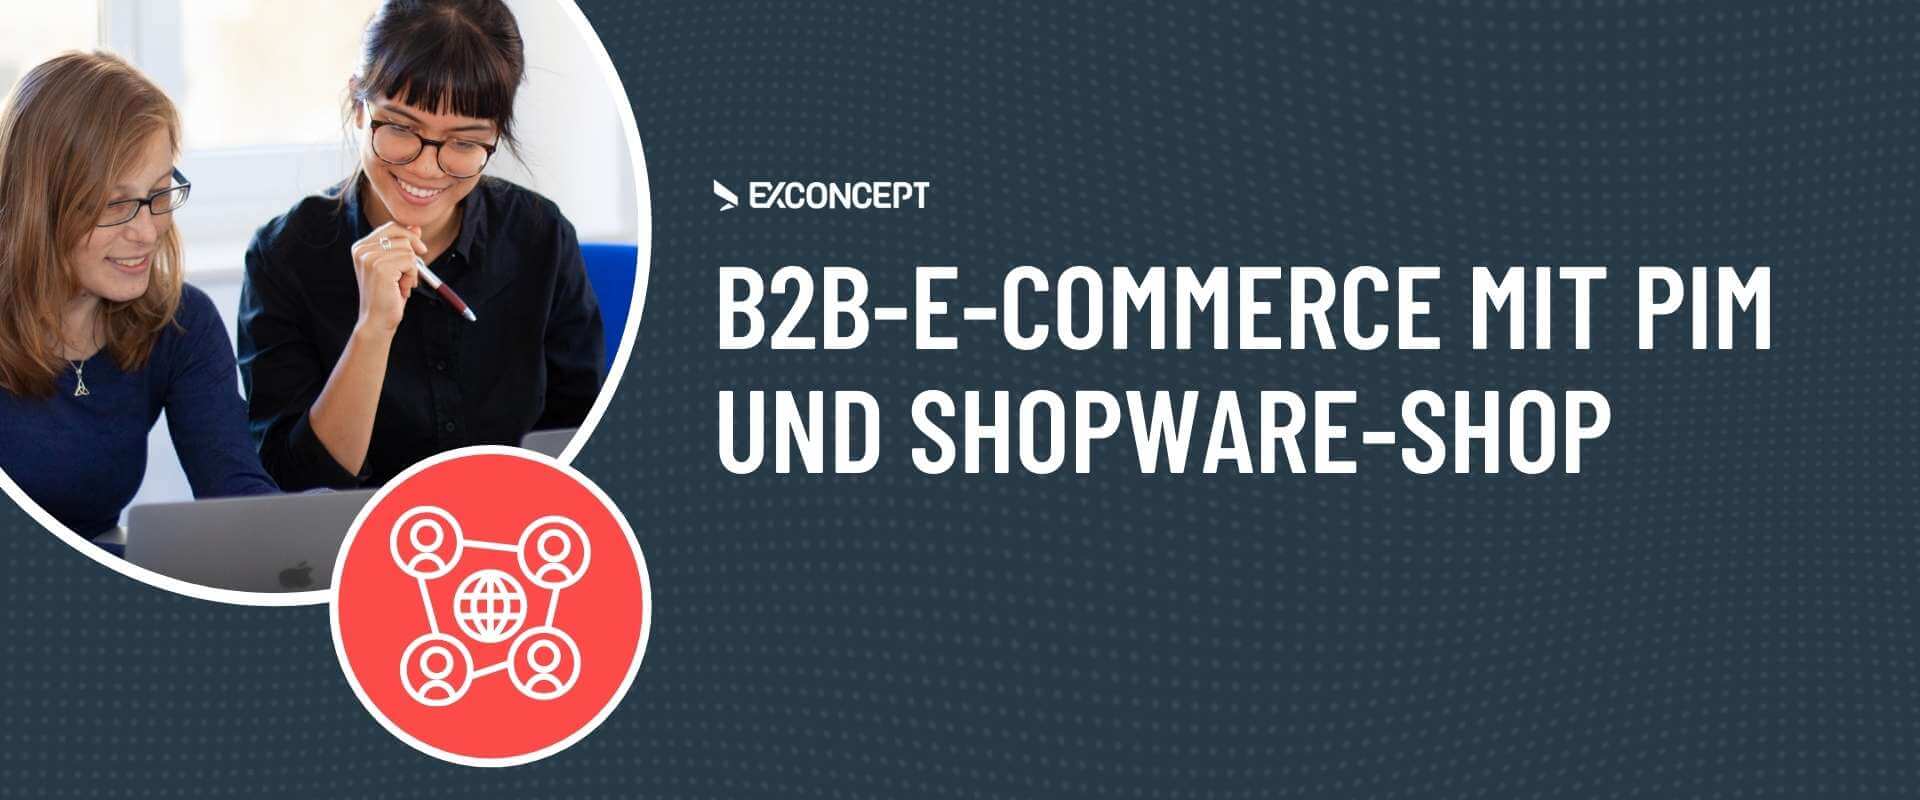 b2b-e-commerce pim shopware